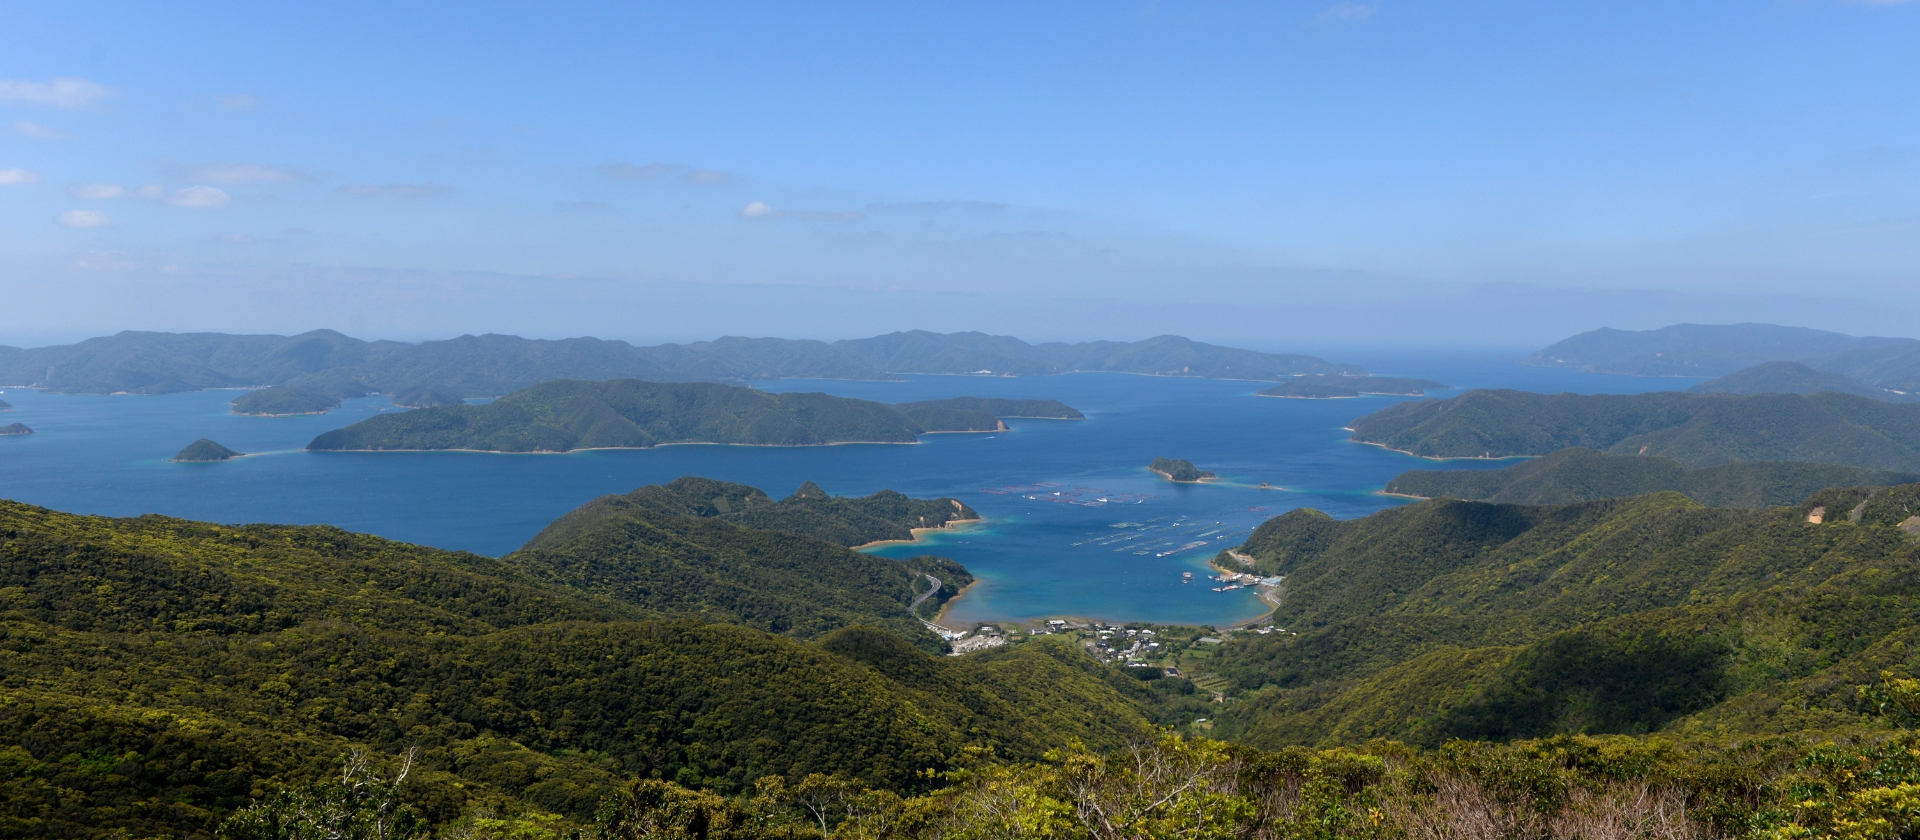 奄美大島の美しい自然と、未来のために